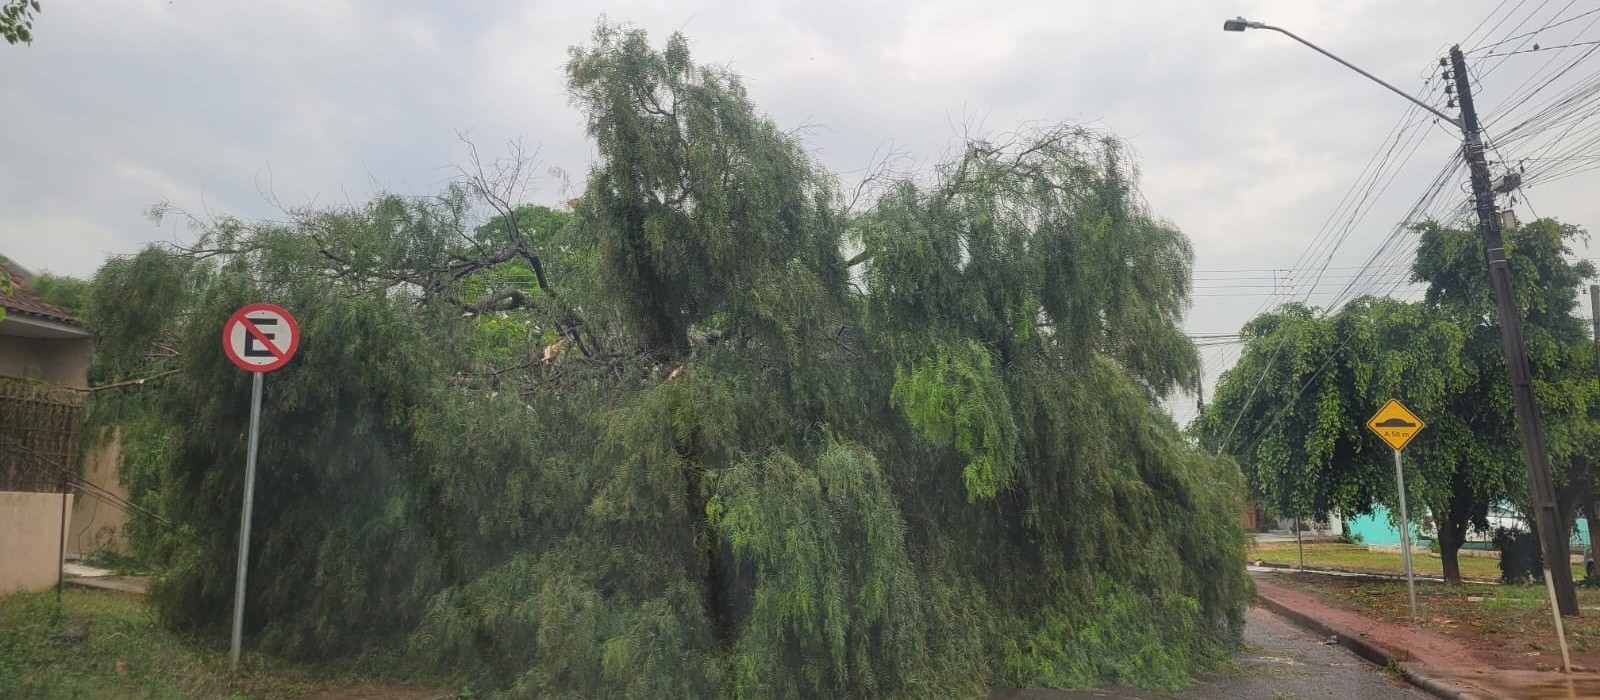 Estragos em Cascavel foram causados por tornado de categoria F2, segundo Simepar